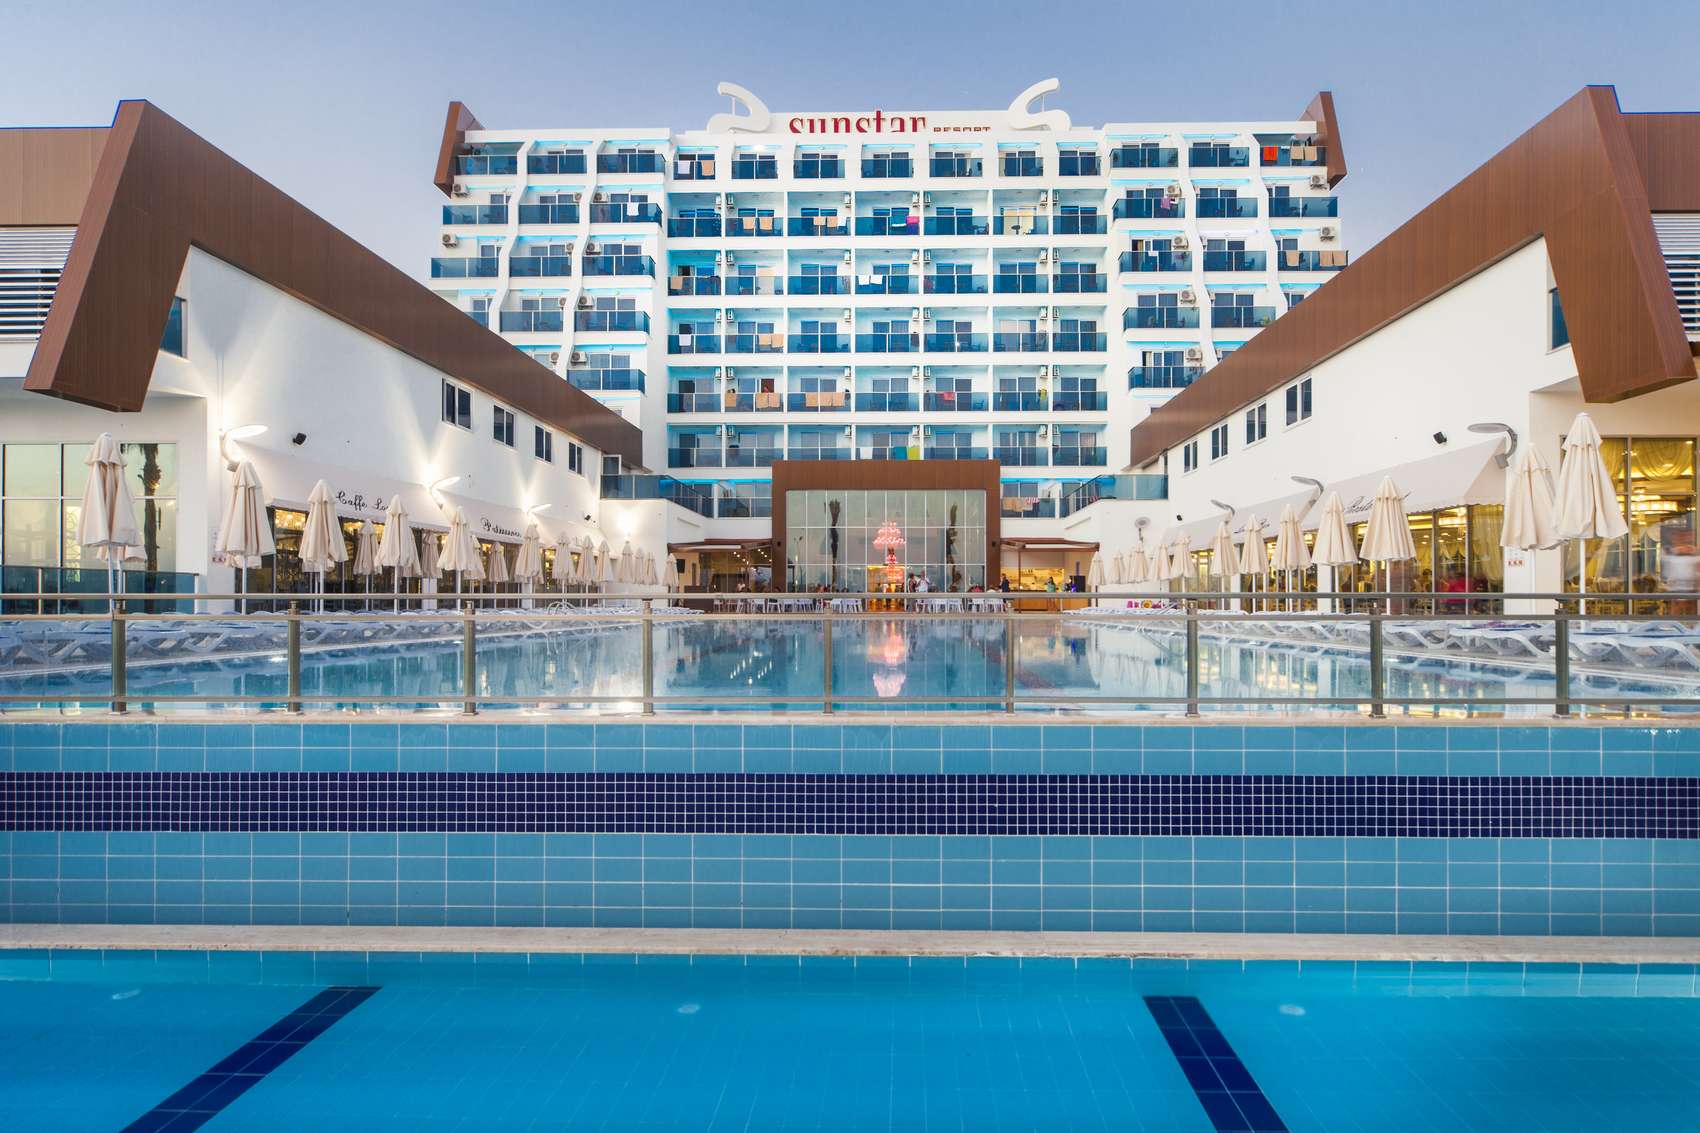 Get star 5. Sunstar Resort Hotel 5 Турция. Sunstar Resort 5 Турция Аланья. Отель Sun Star Resort 5 Турция. Санстар отель Турция 5 Алания.